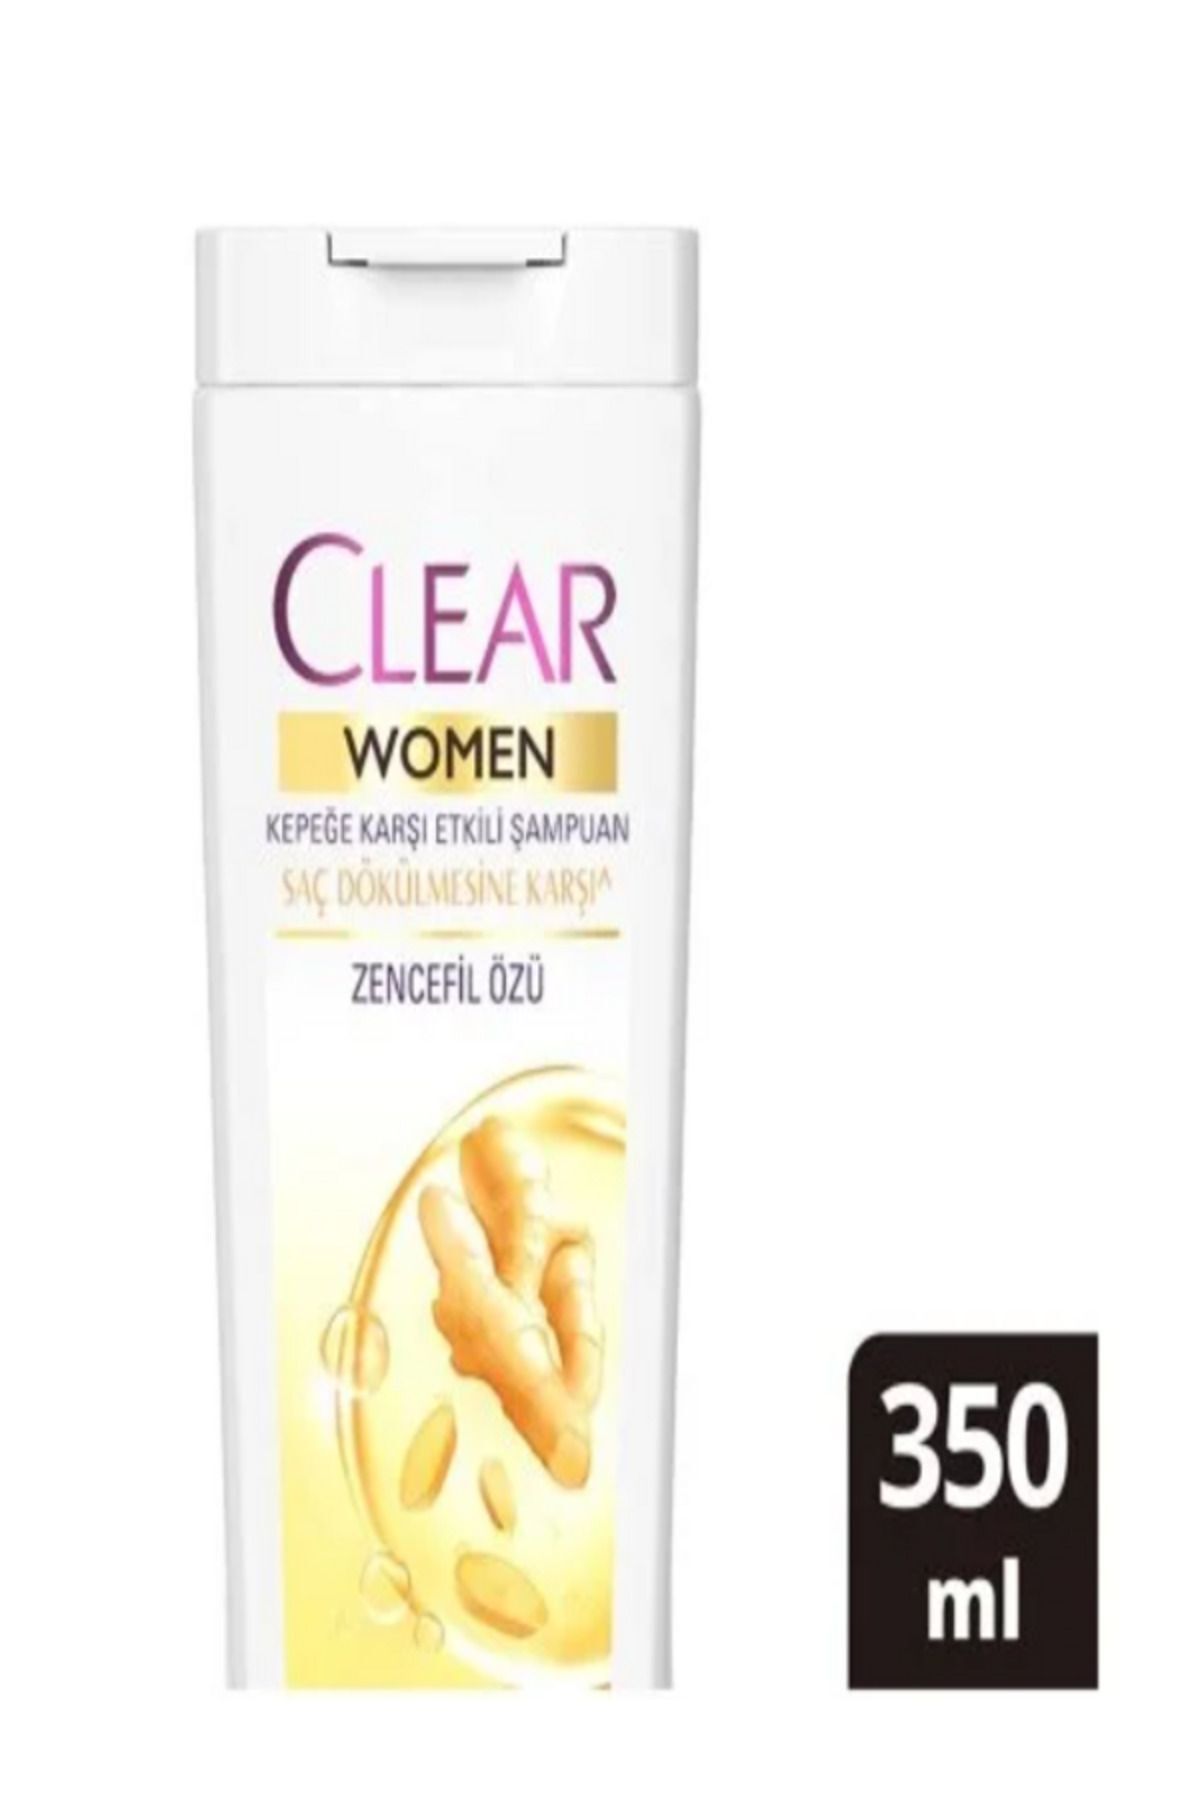 Clear Women Saç Dökülmesine Ve Kepeğe Karşı Etkili Şampuan 350 ml